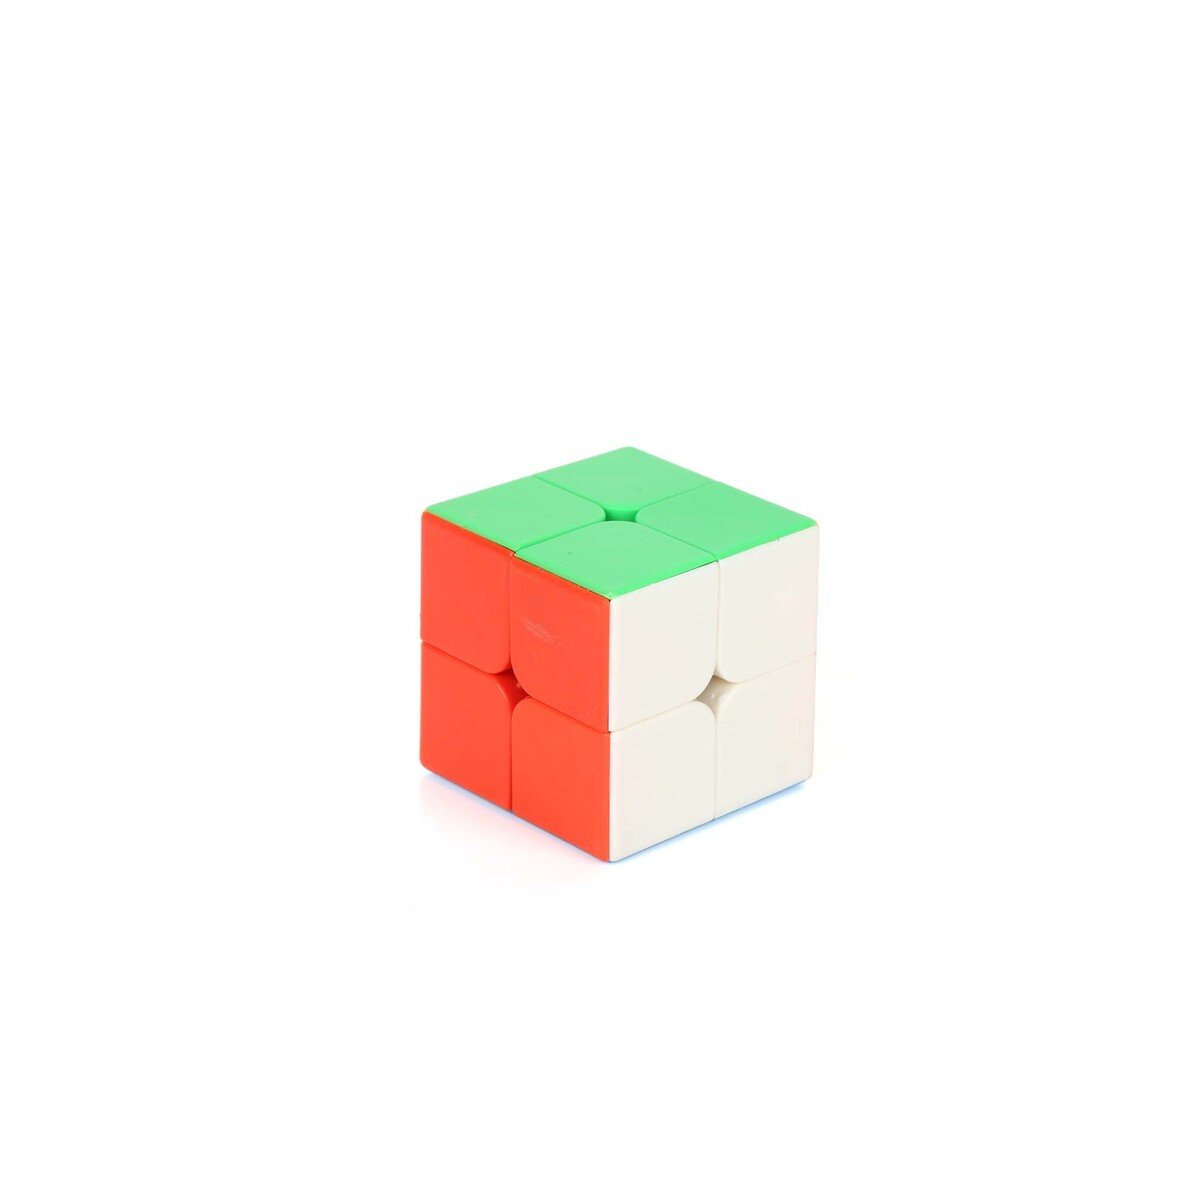 Hui Jie Rubik's Cube 2X2, 1071